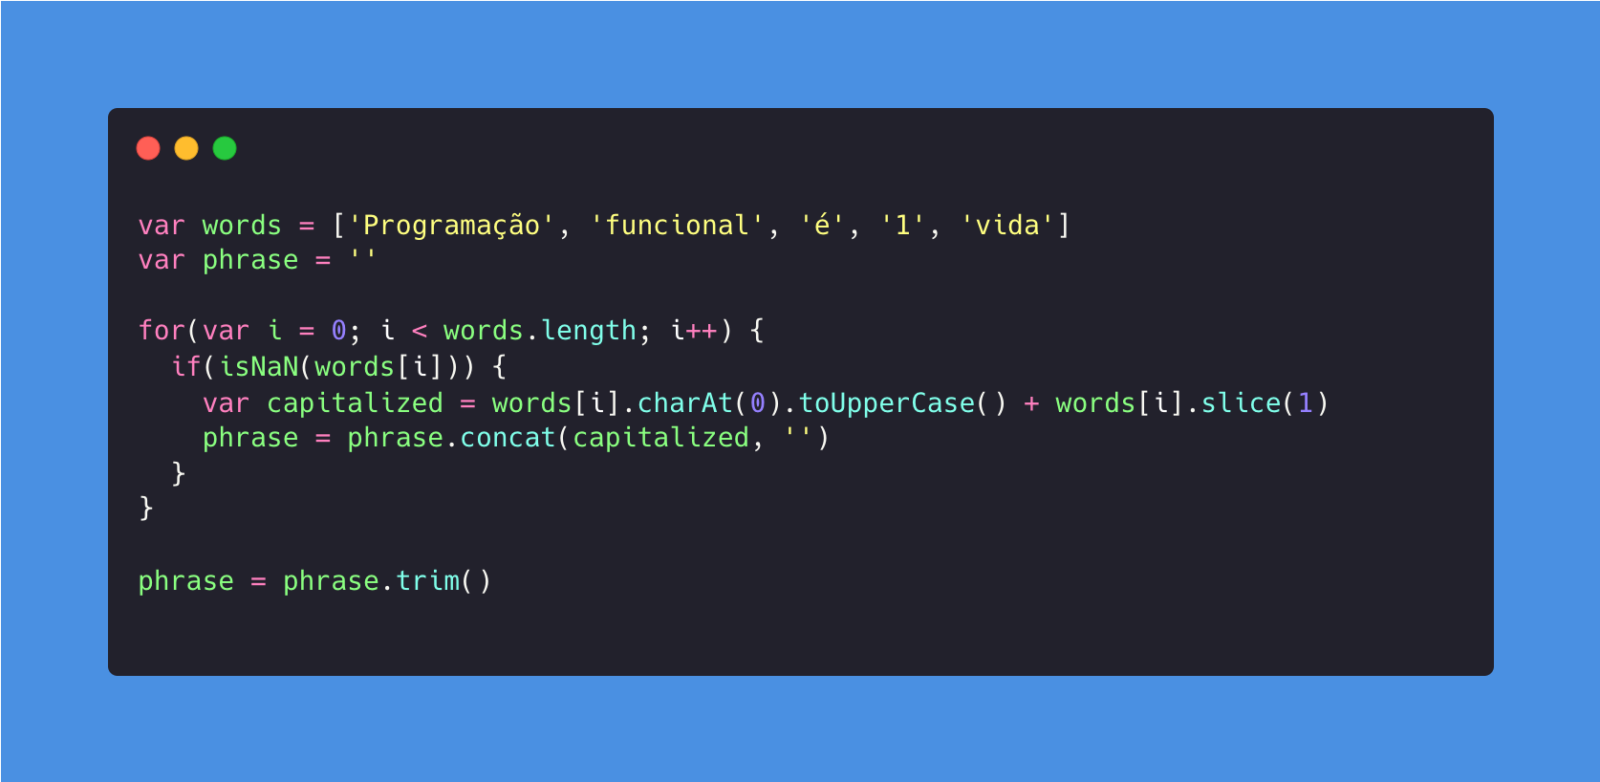 Print de uma imagem em fundo preto e azul de linguagem de código, com exemplos de legibilidade de programação funcional